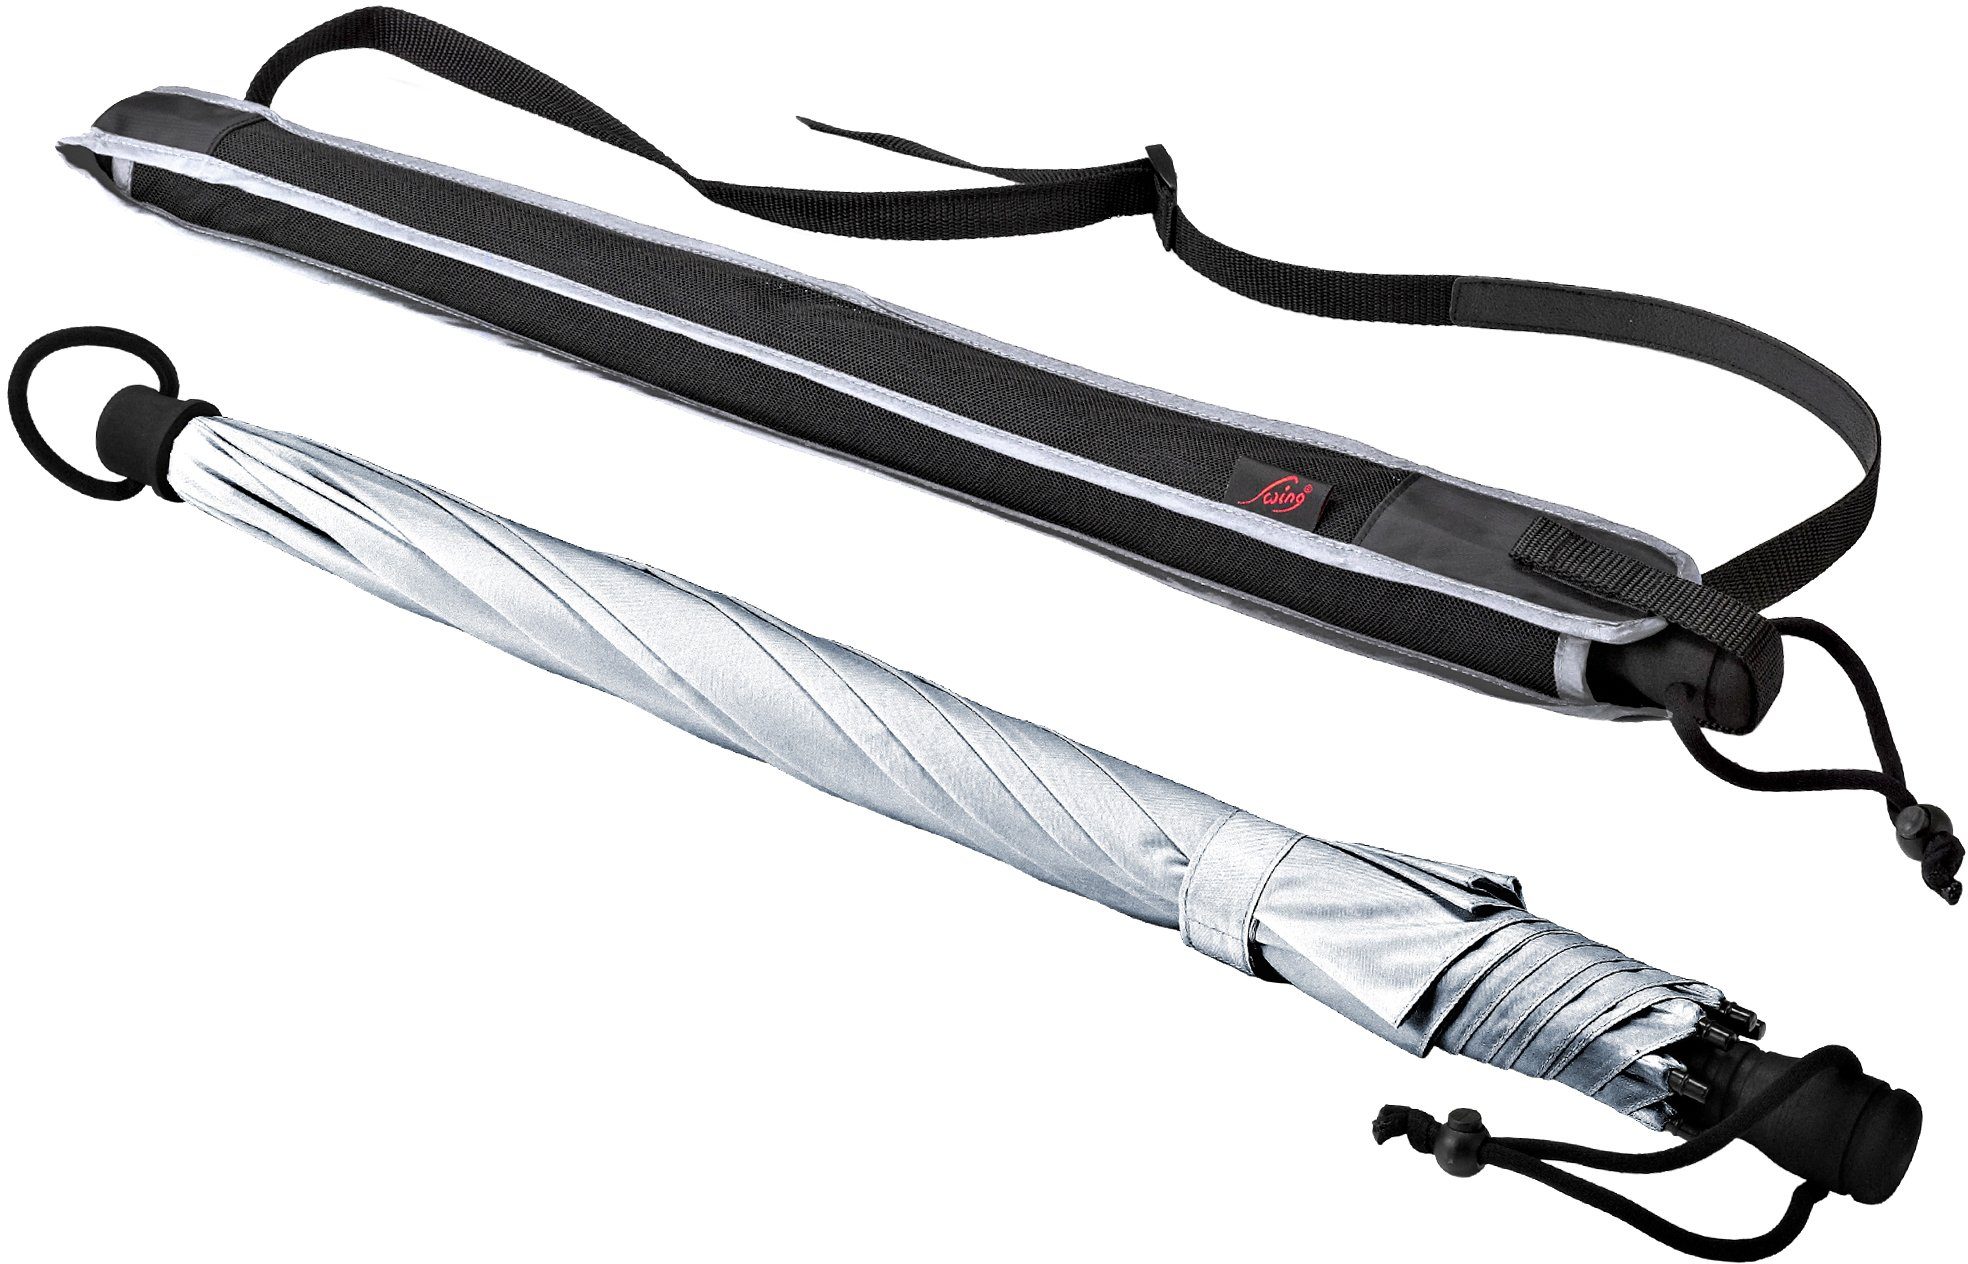 Stockregenschirm 50+ mit EuroSCHIRM® silber, Swing, UV-Lichtschutzfaktor